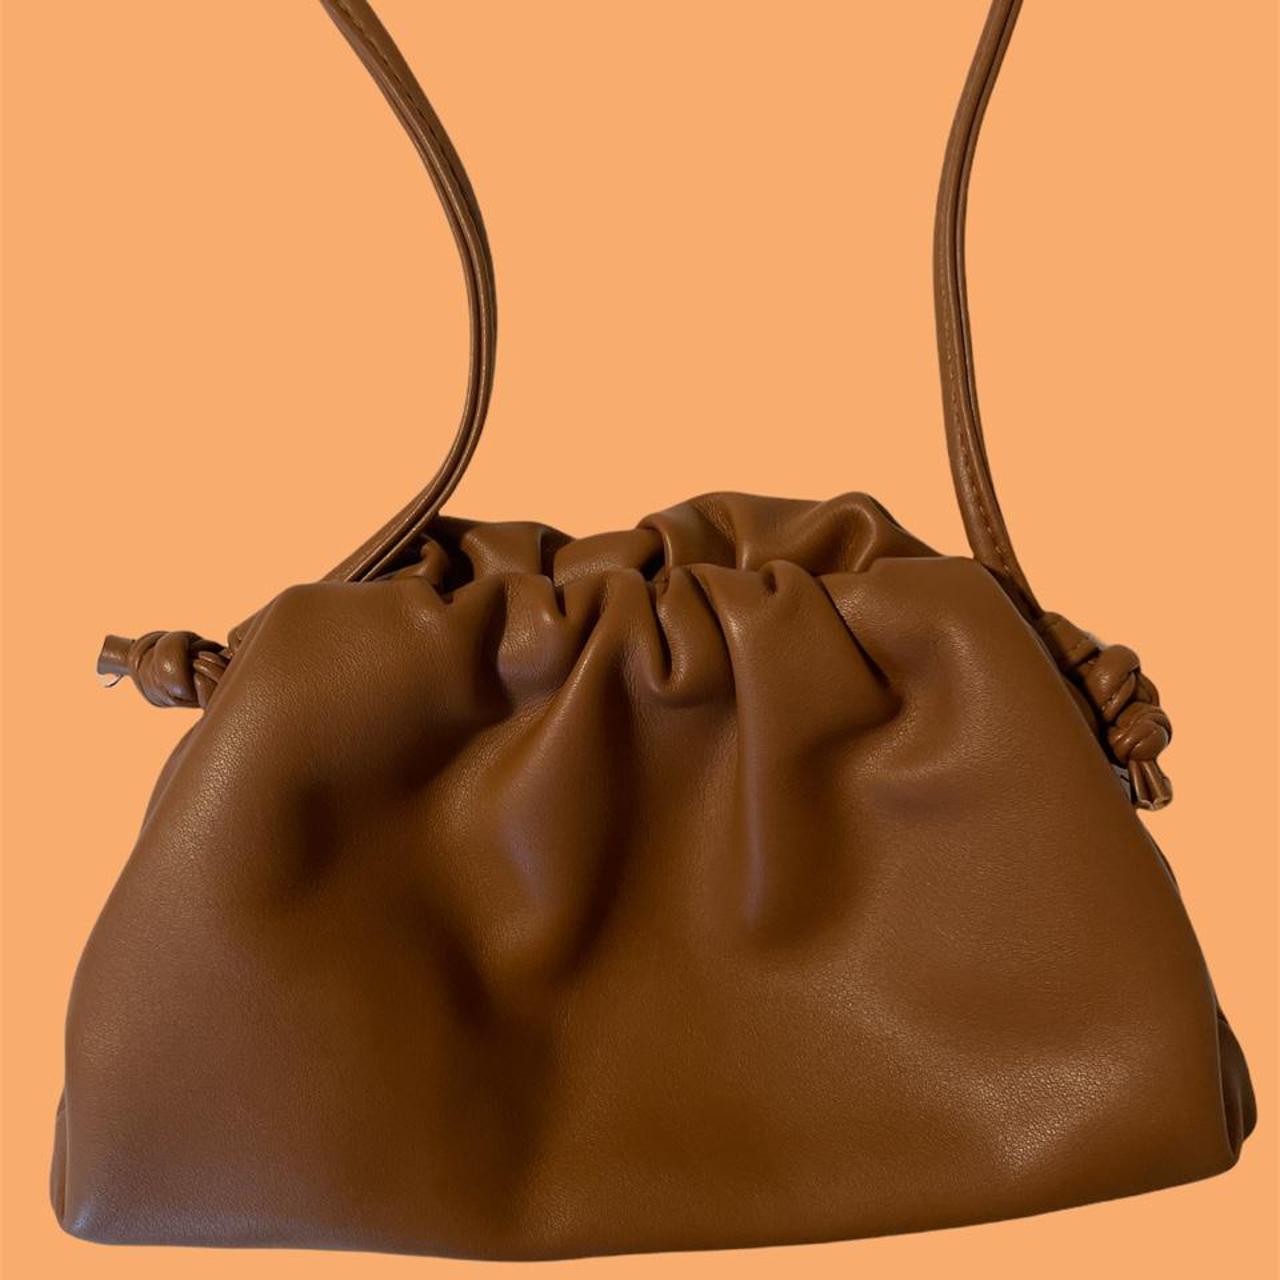 Bottega Veneta Women's Brown and Tan Bag (4)